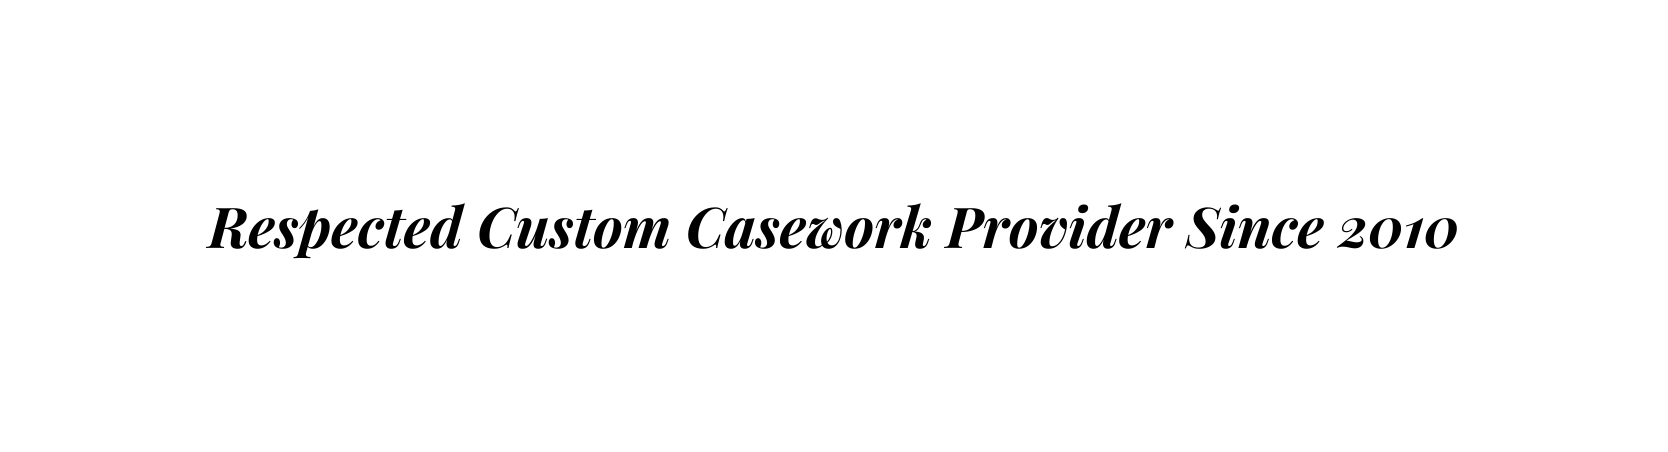 Respected Custom Casework Provider Since 2010